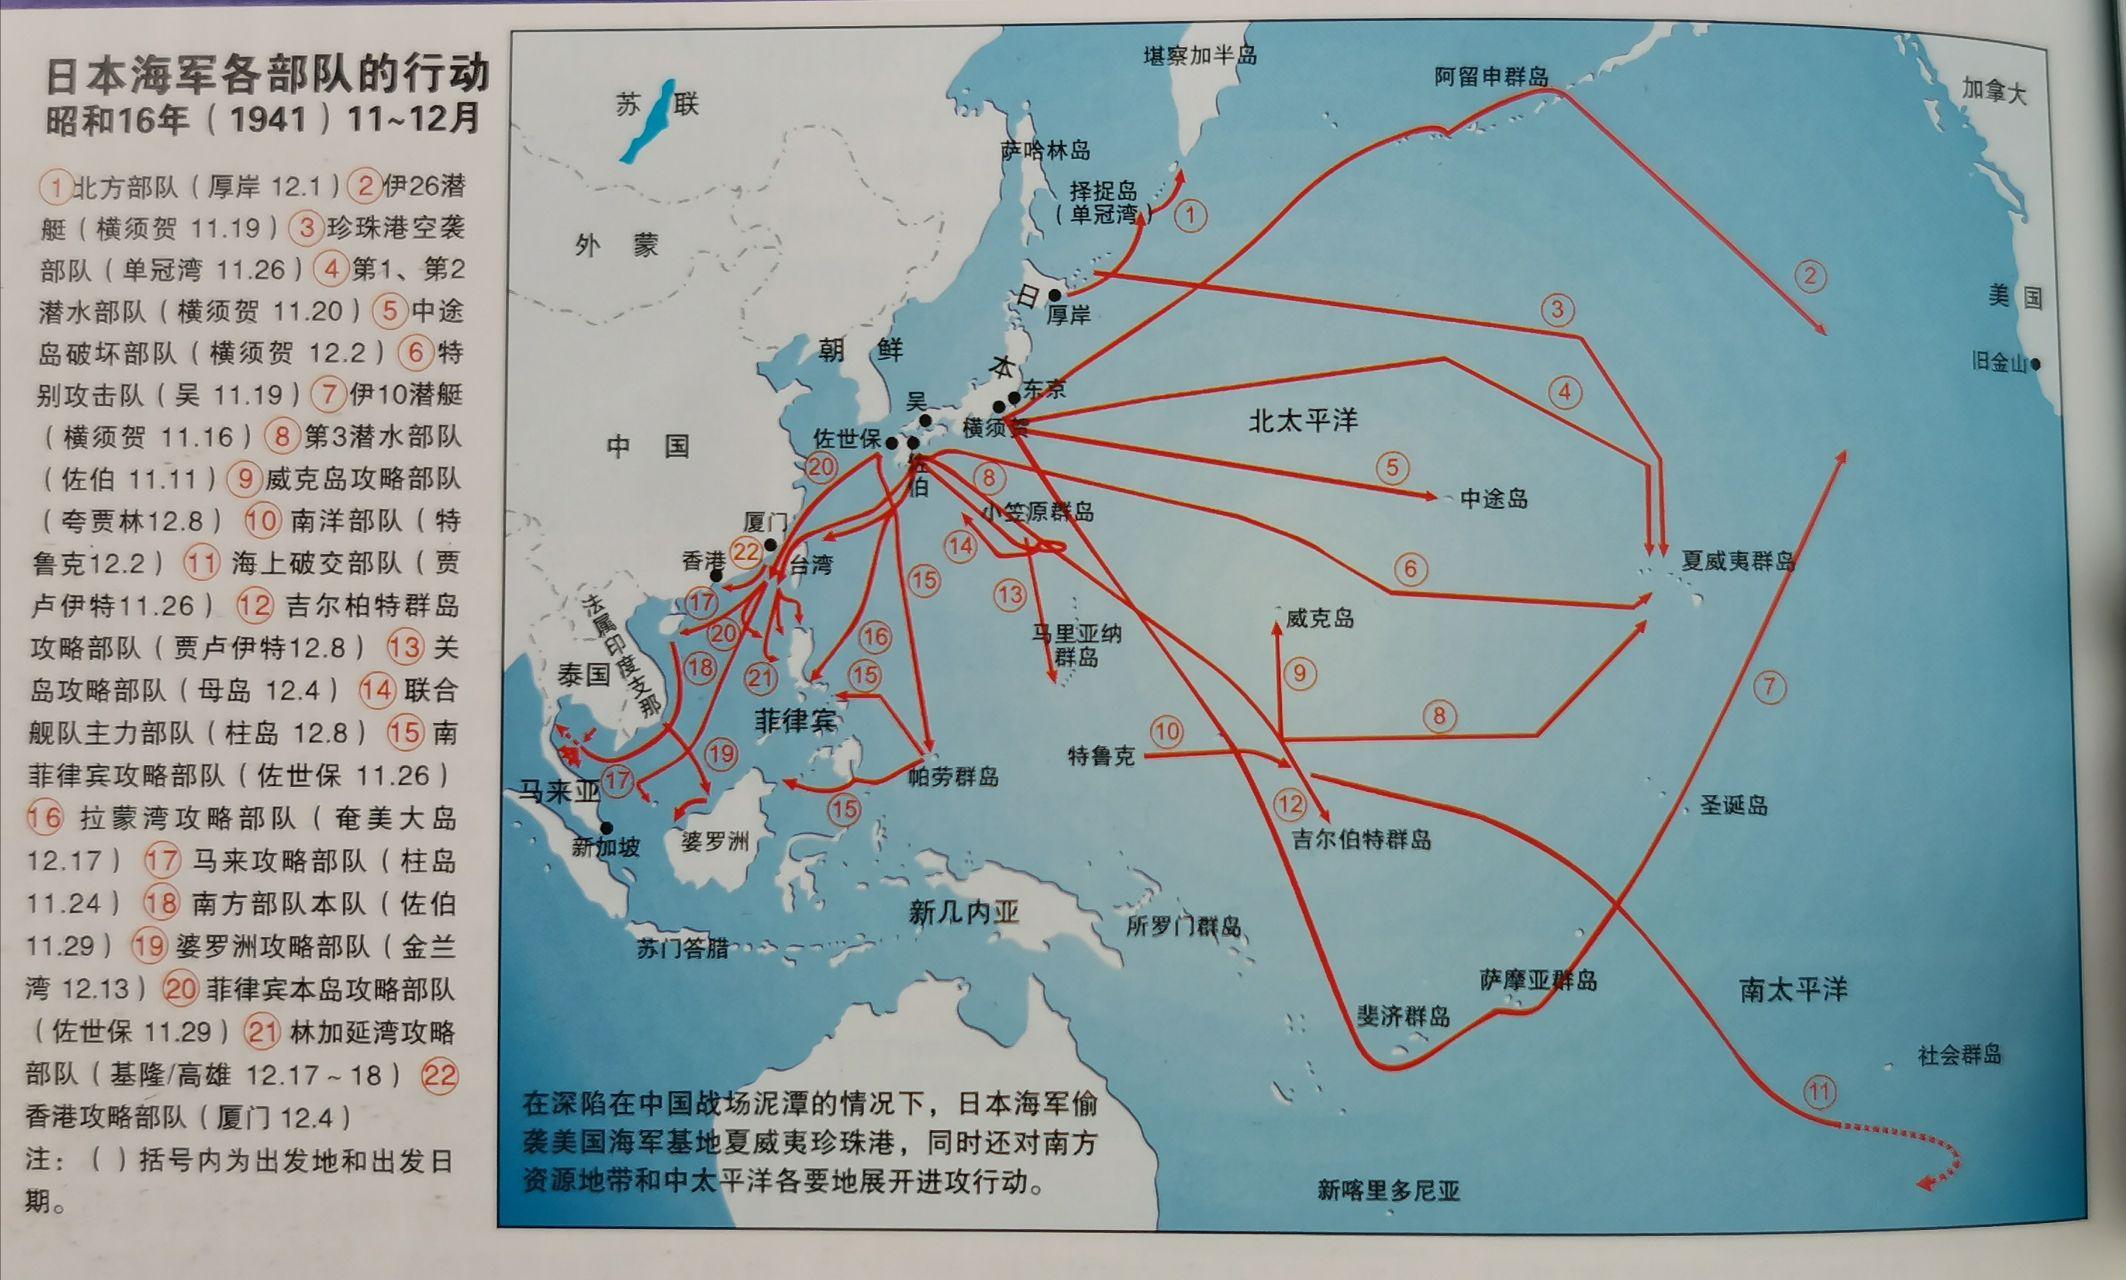 战地五太平洋战争地图图片